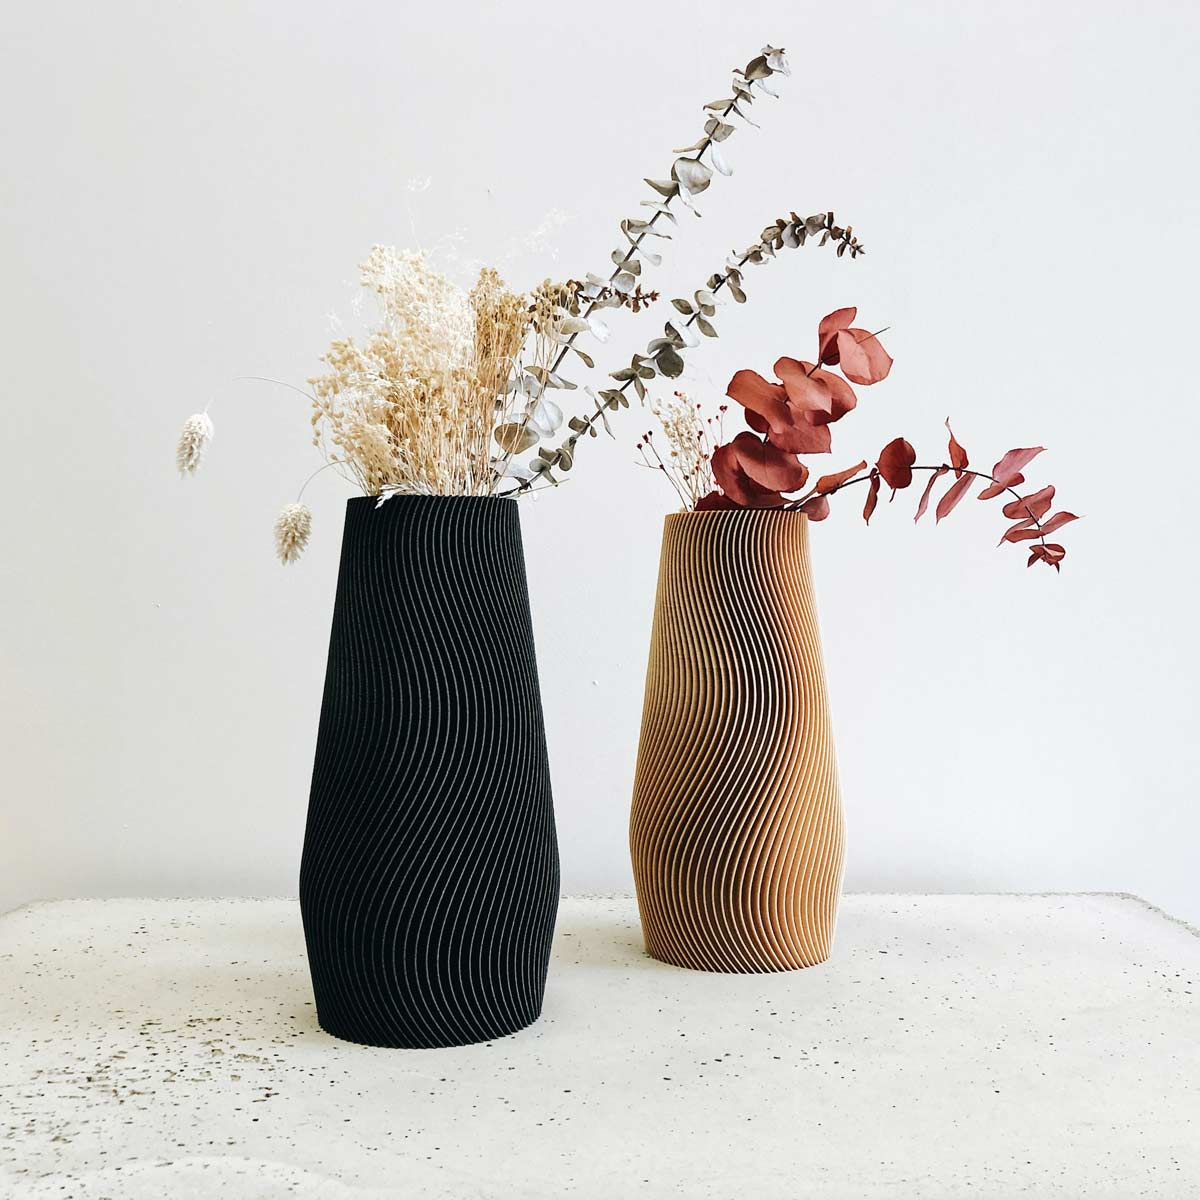 vaso nero decorativo minimum design - LivingDecò